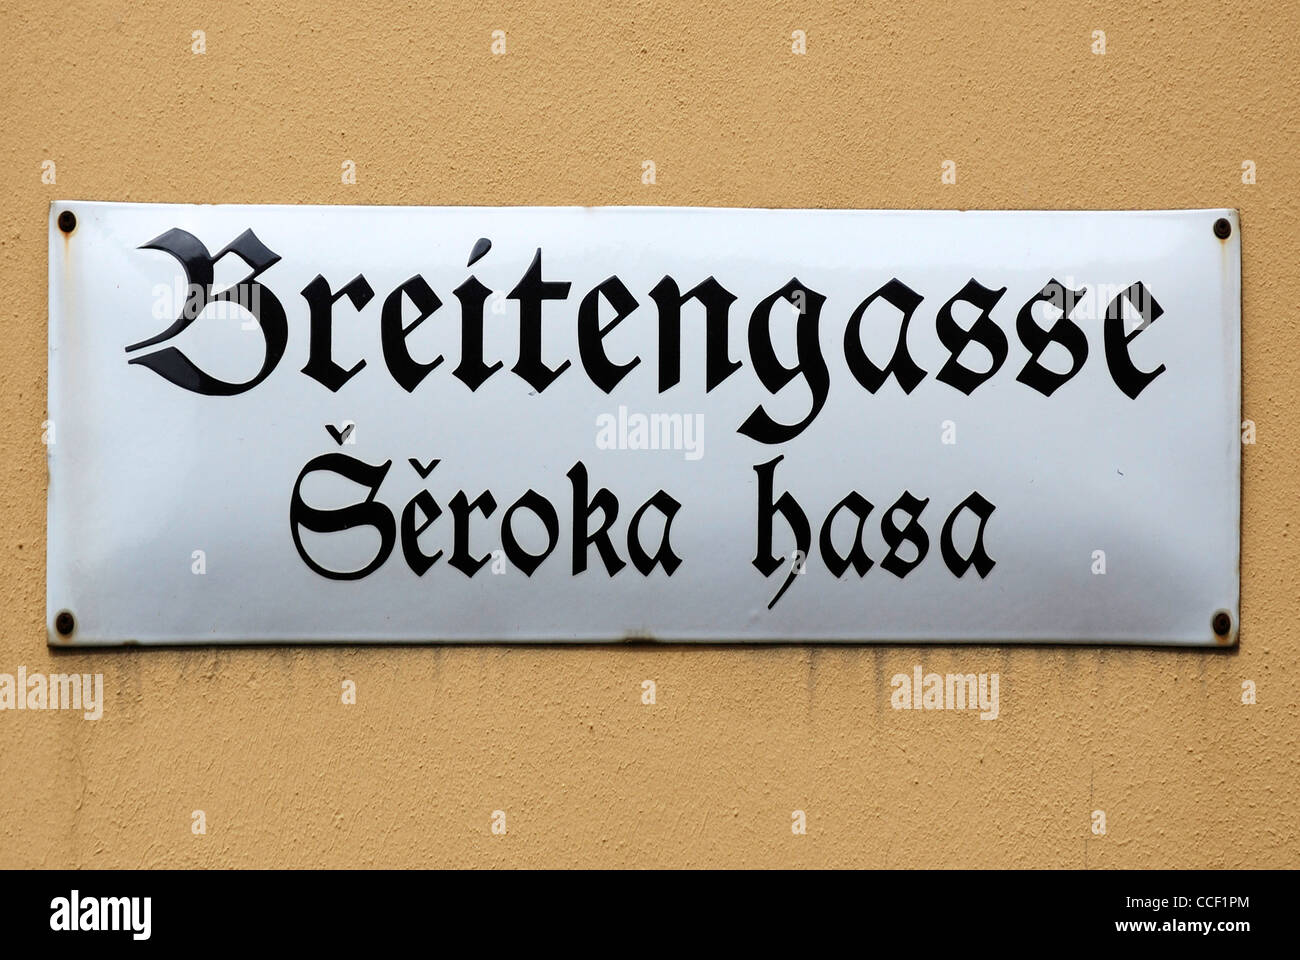 Calle signo de Bautzen en alemán y en el idioma sorabo Breitengasse - Seroka hasa. Foto de stock